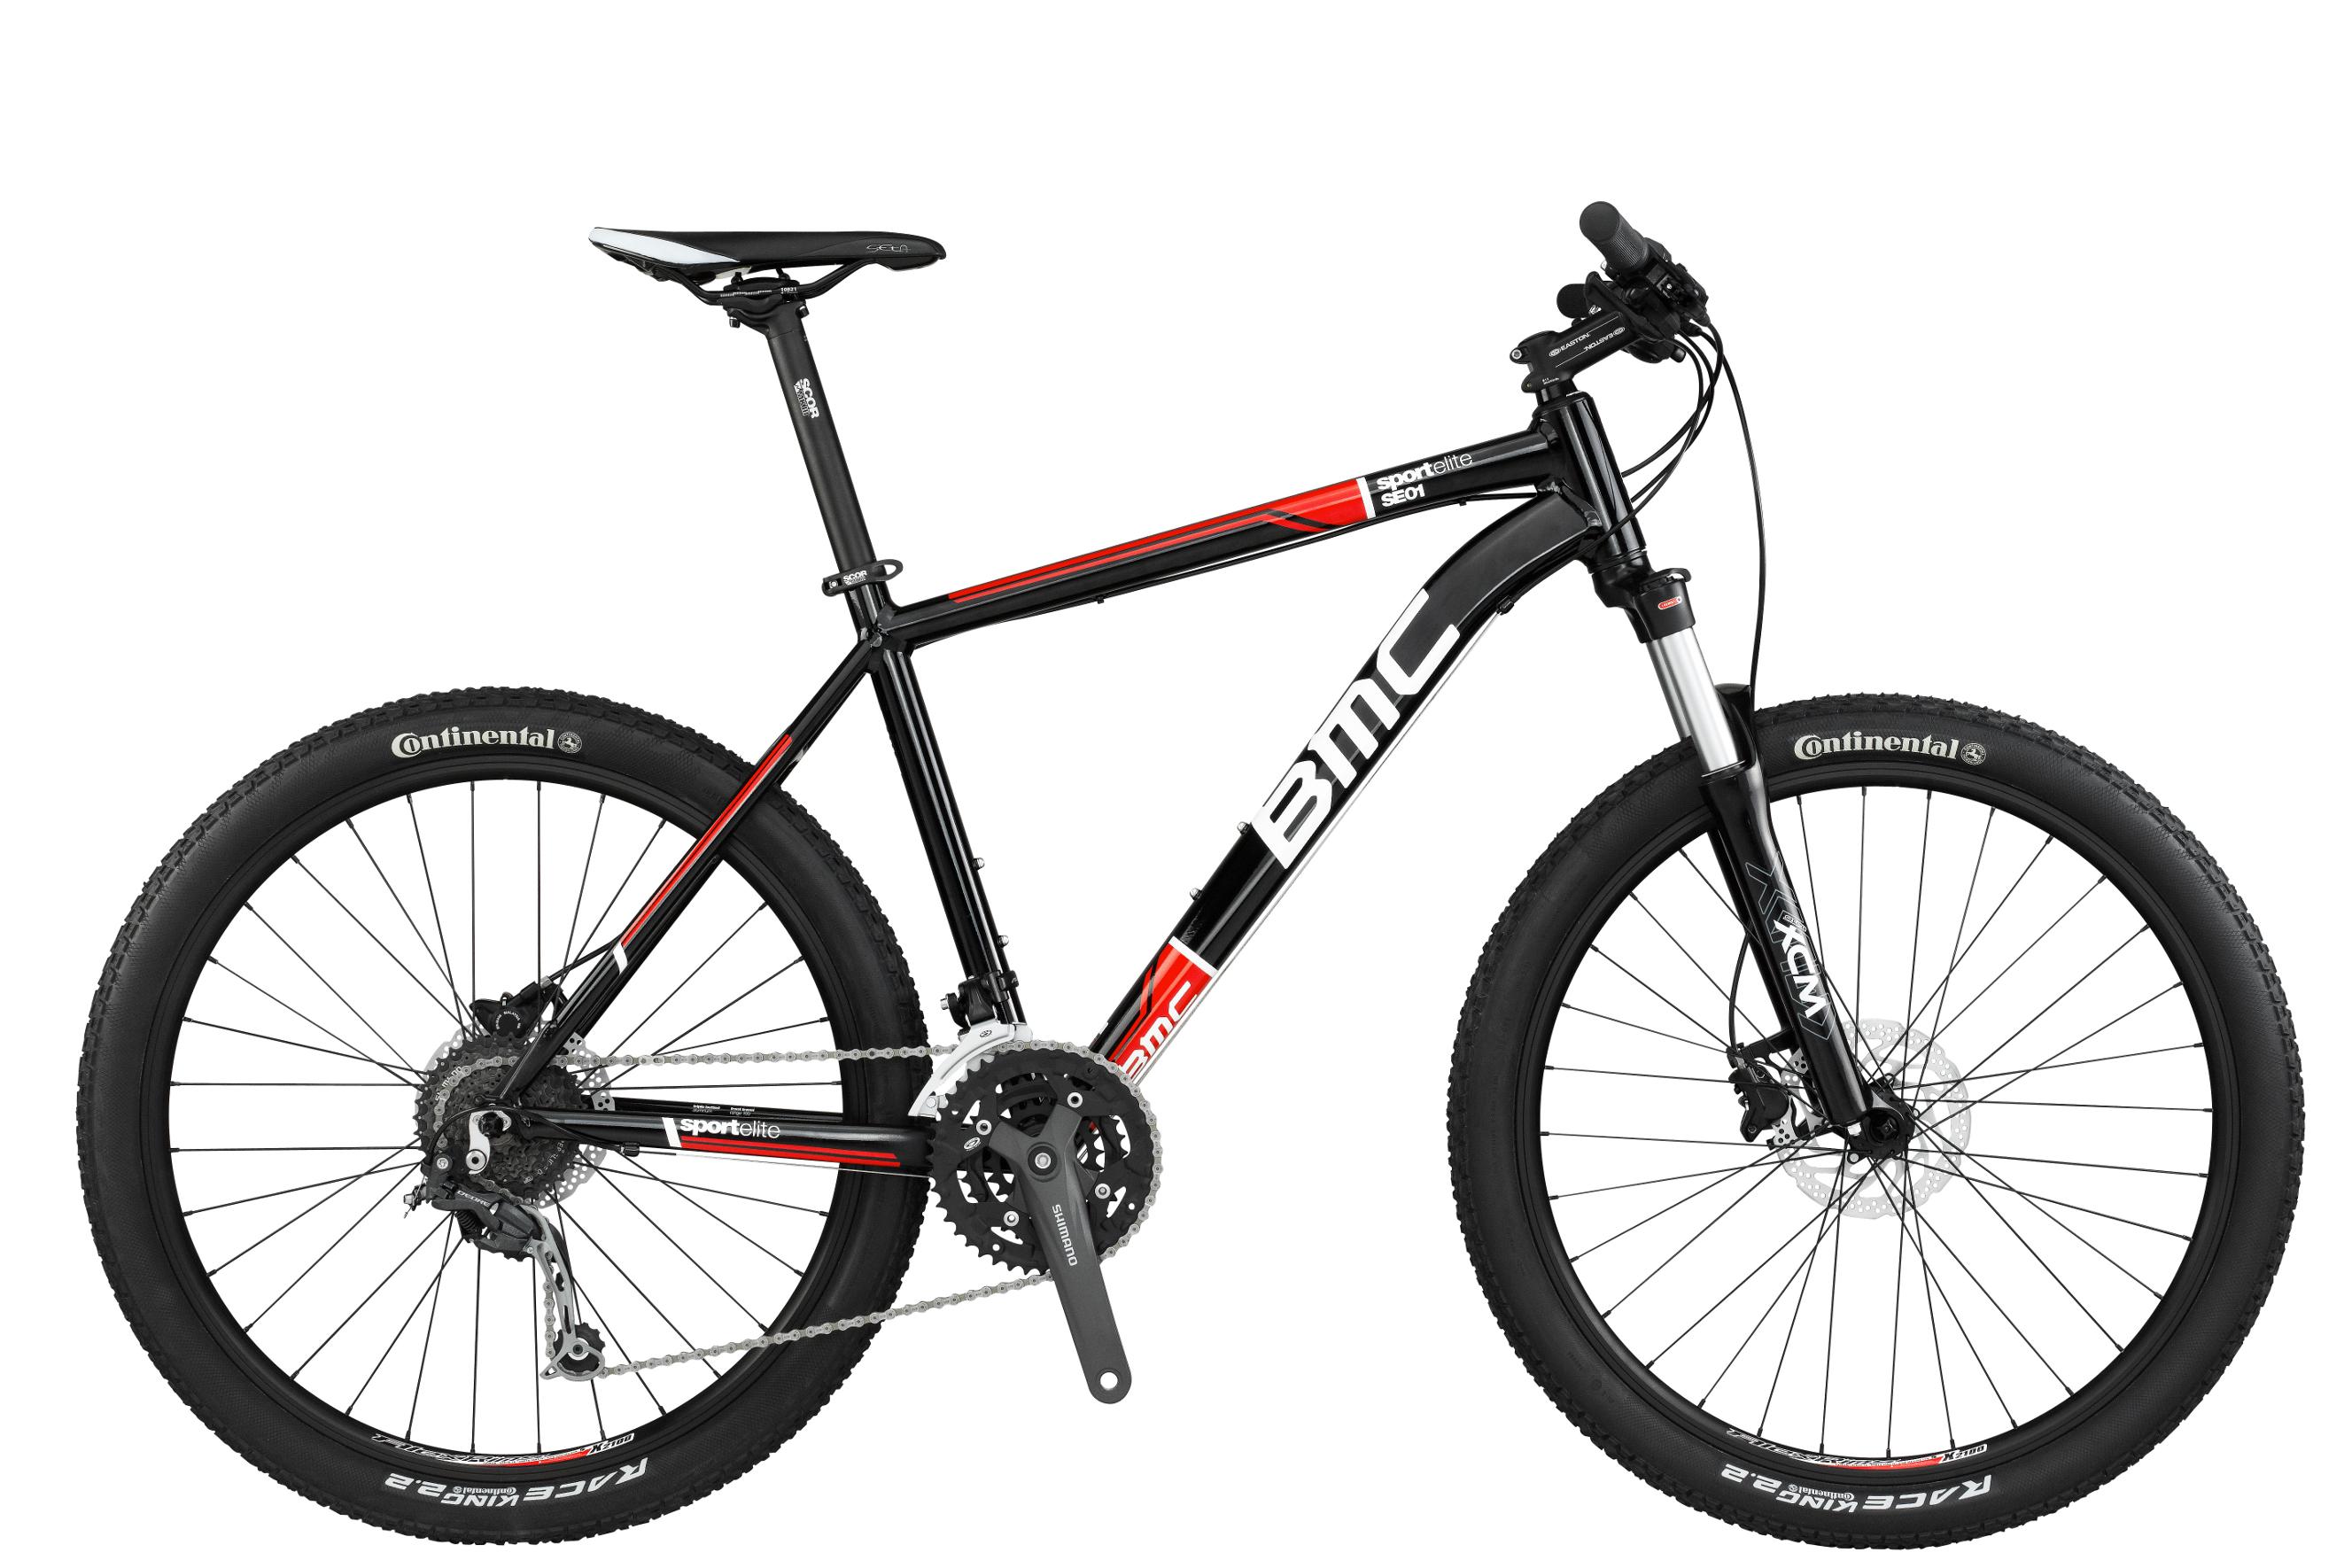 Foto Bicicleta de montaña BMC sportelite SE01 Alivio/Deore rojo , 53,3 cm foto 625005